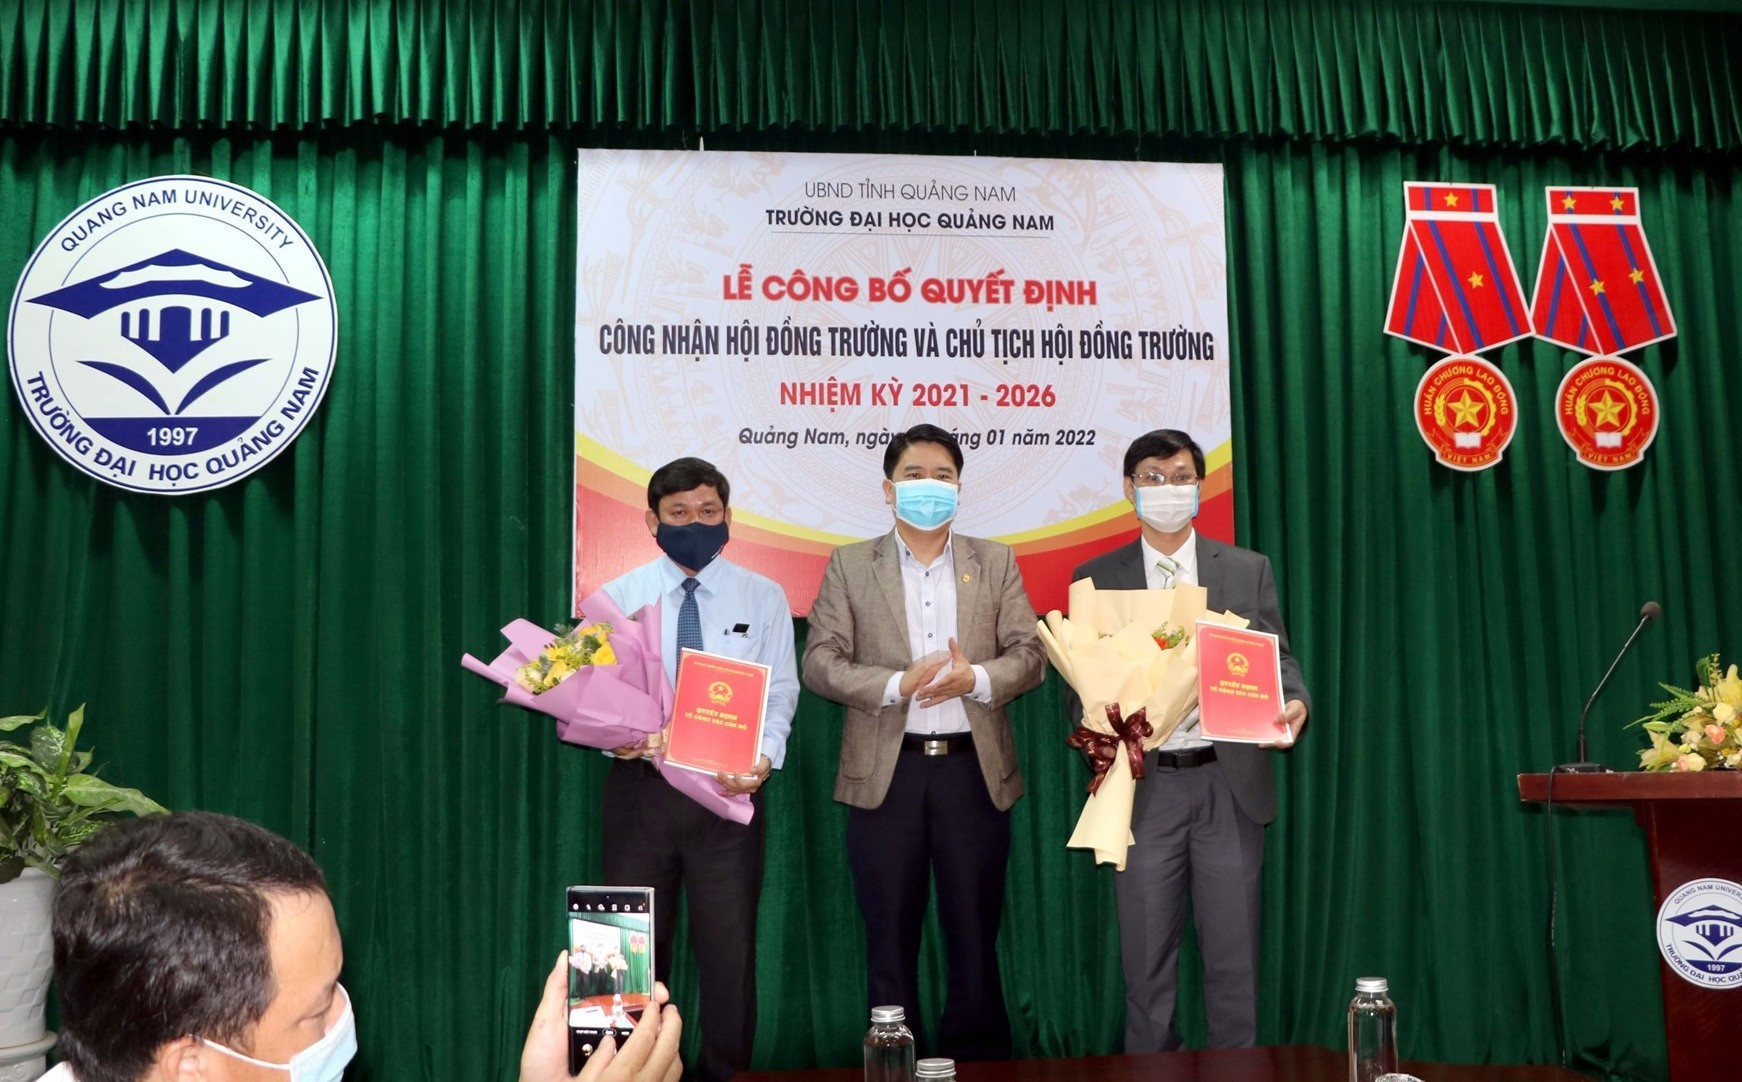 Phó Chủ tịch UBND tỉnh Trần Văn Tân trao Quyết định công nhận Hội đồng trường và Chủ tịch Hội đồng trường. Ảnh: CHÂU HÙNG